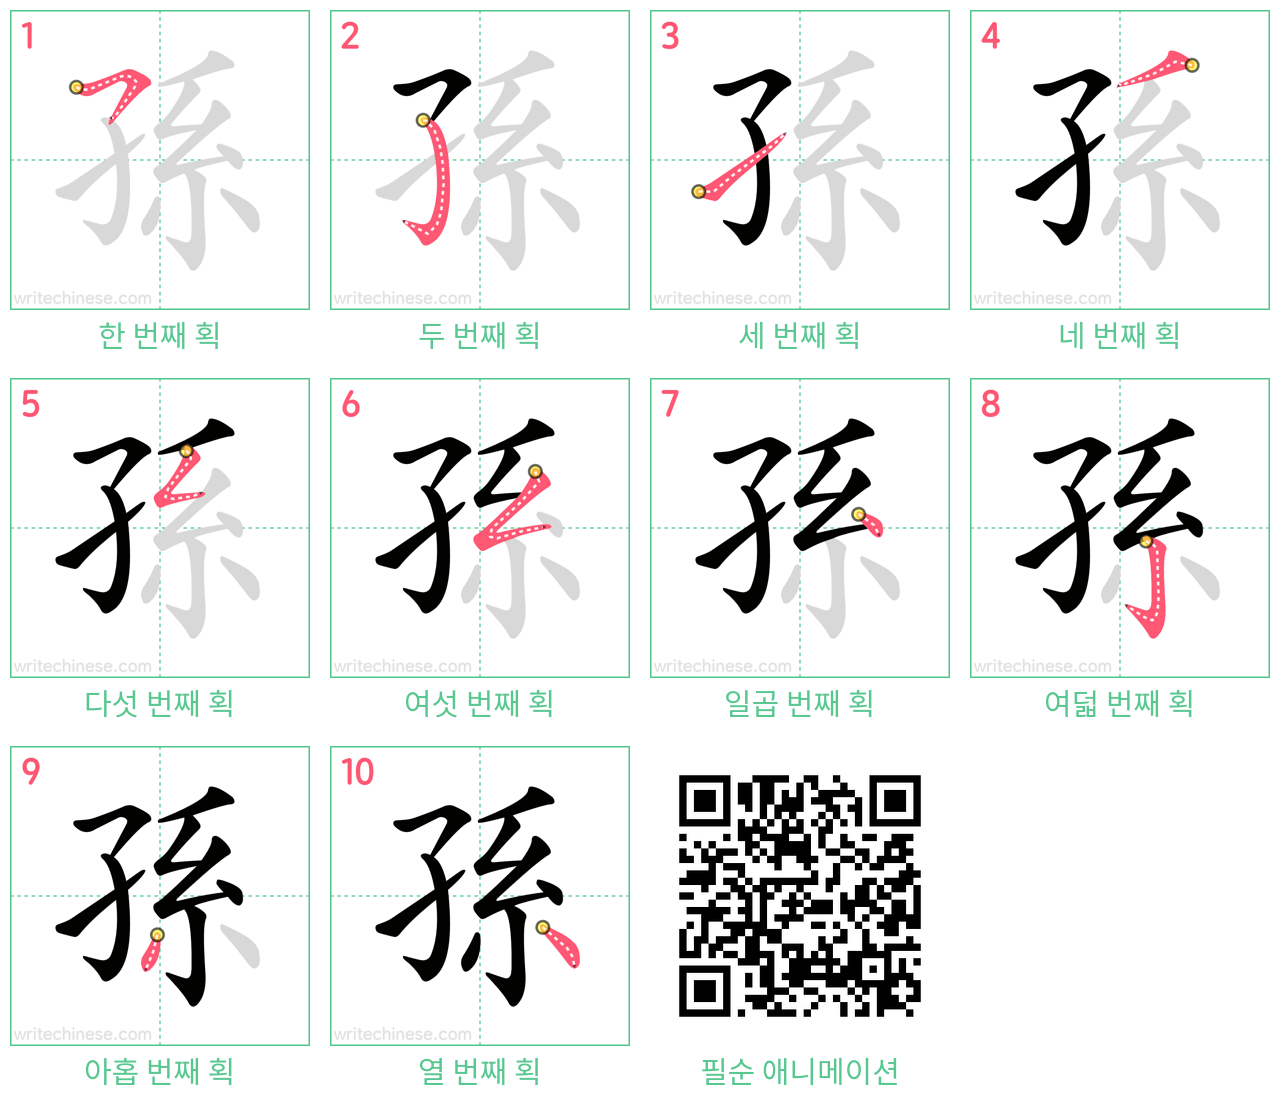 孫 step-by-step stroke order diagrams